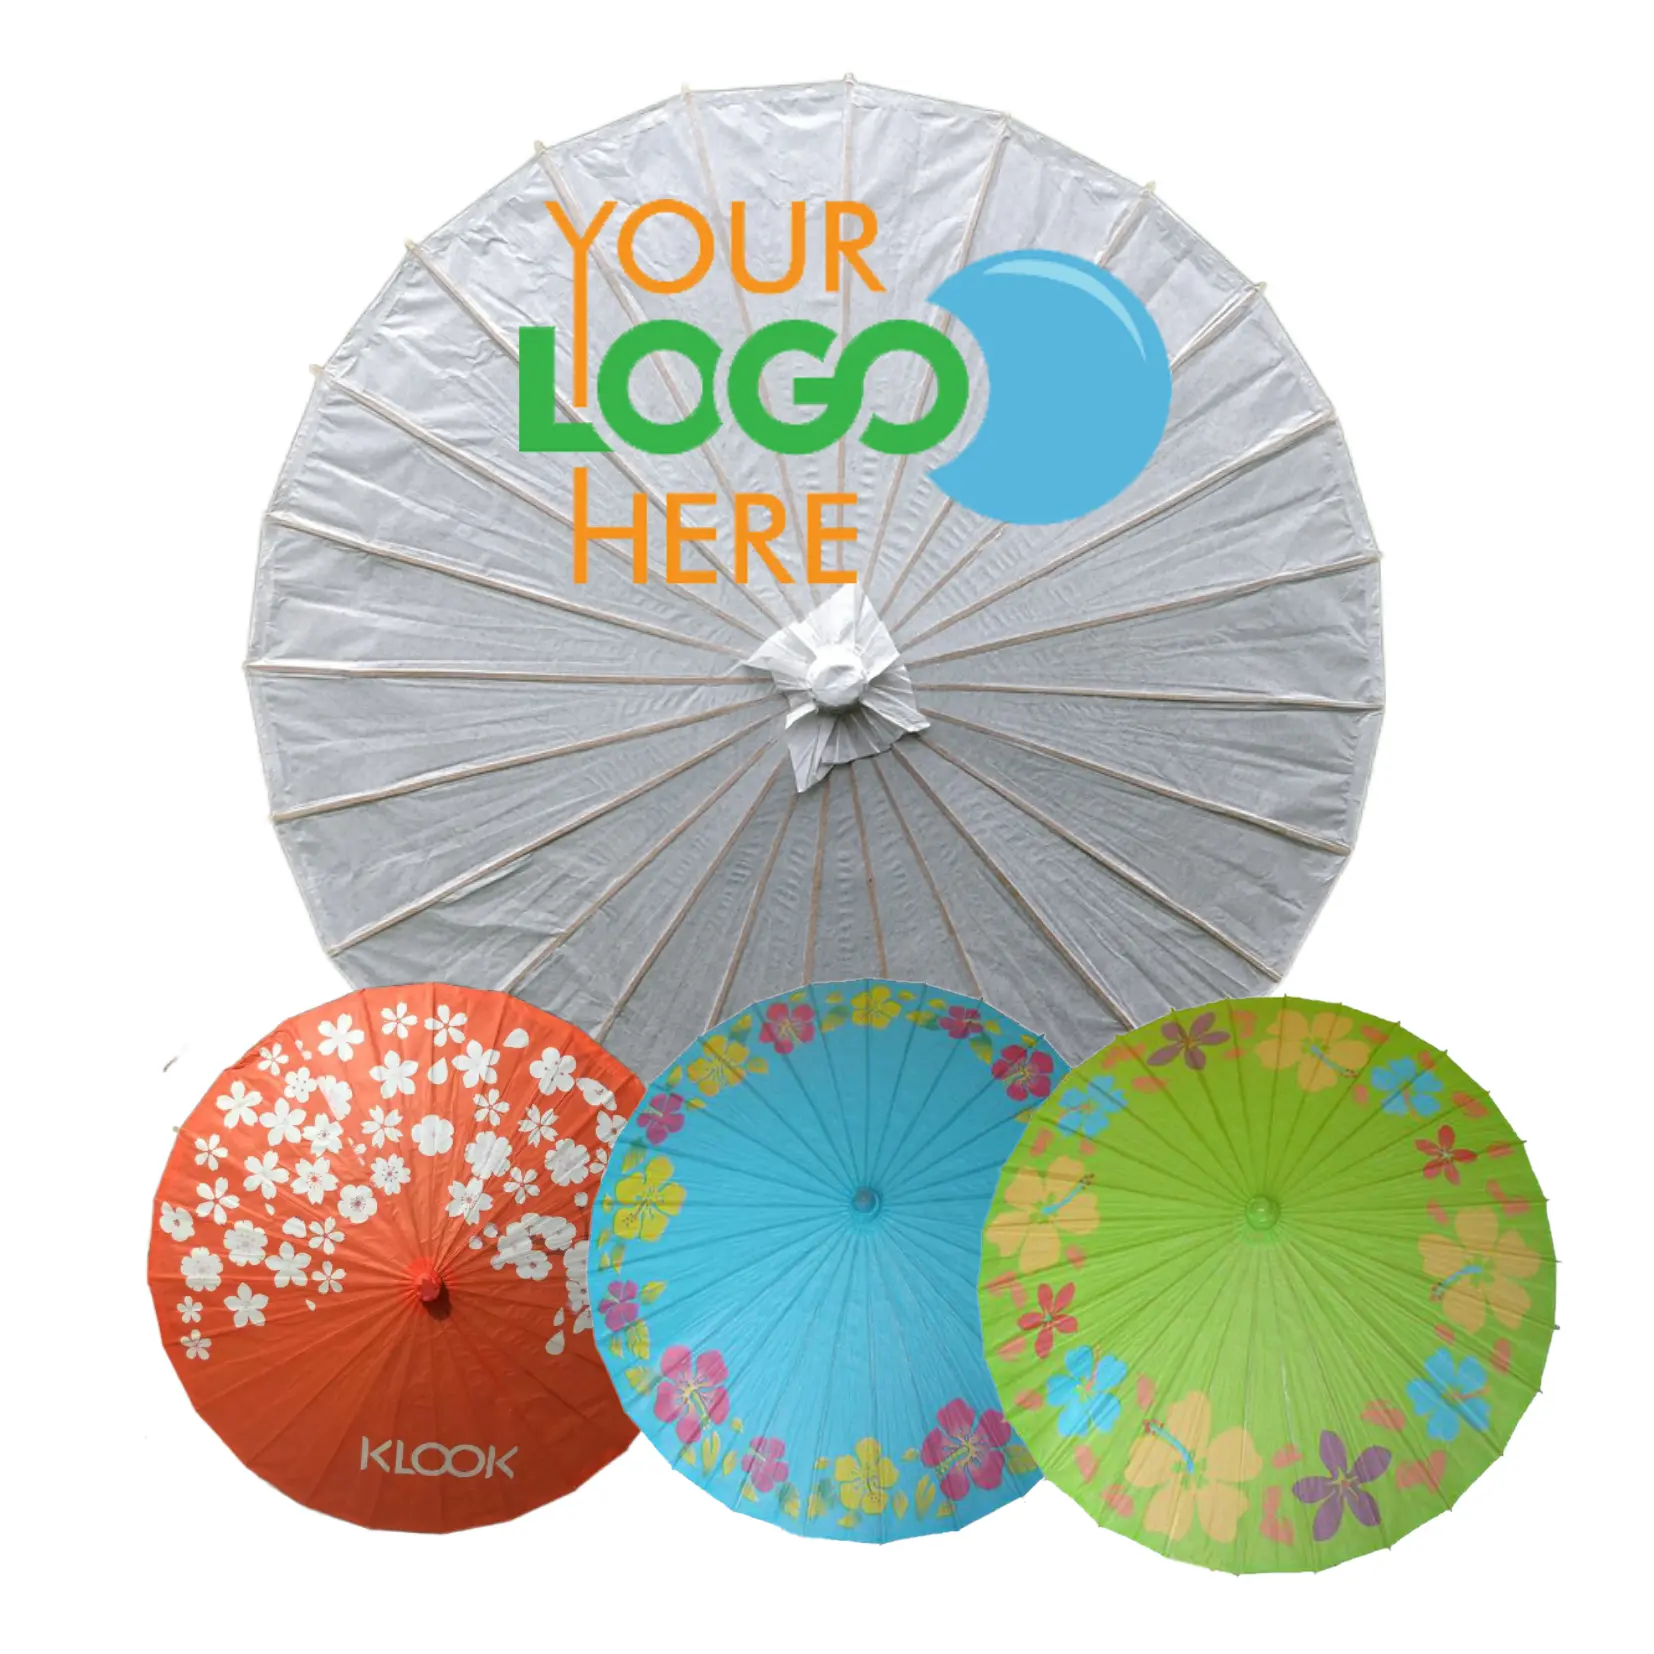 المظلات اليابانية الصينية ، الدعائم الحرفية للرقص ، المظلات المصنوعة يدويًا من الحرير ، مظلة ورقية مزينة بالزيت